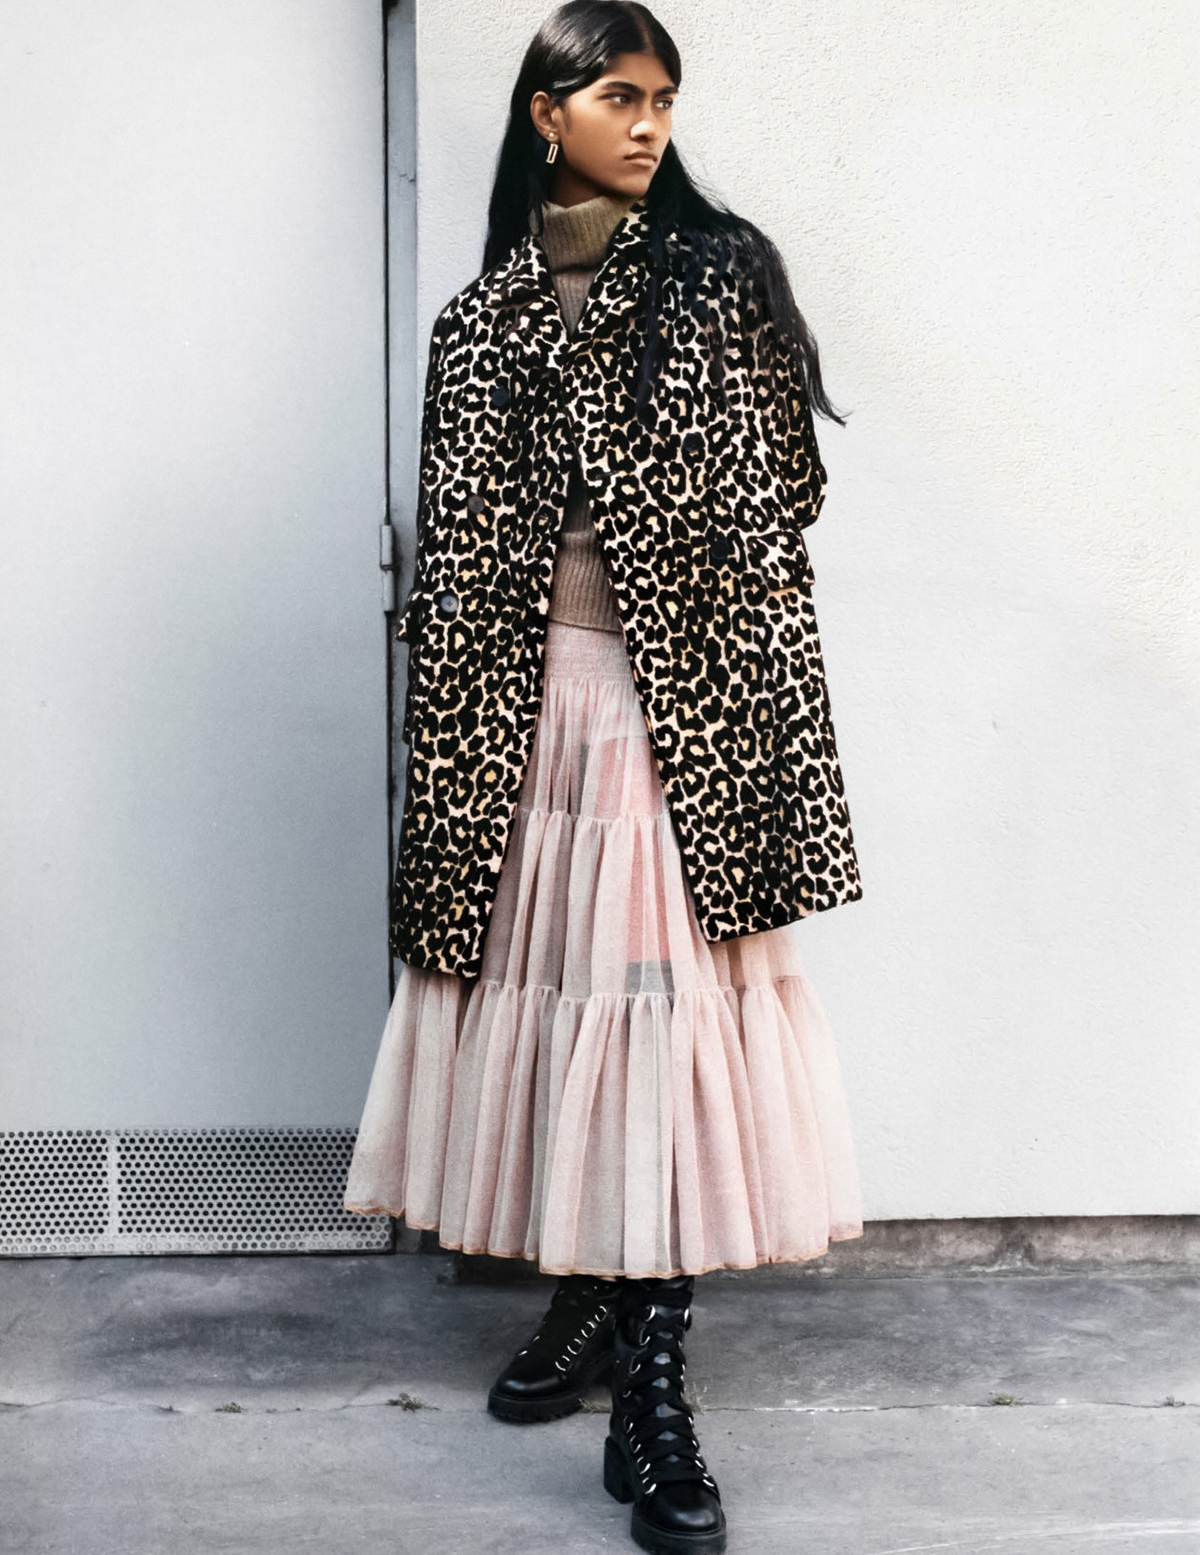 Ashley Radjarame by Fabien Vilrus for Vogue India September 2021